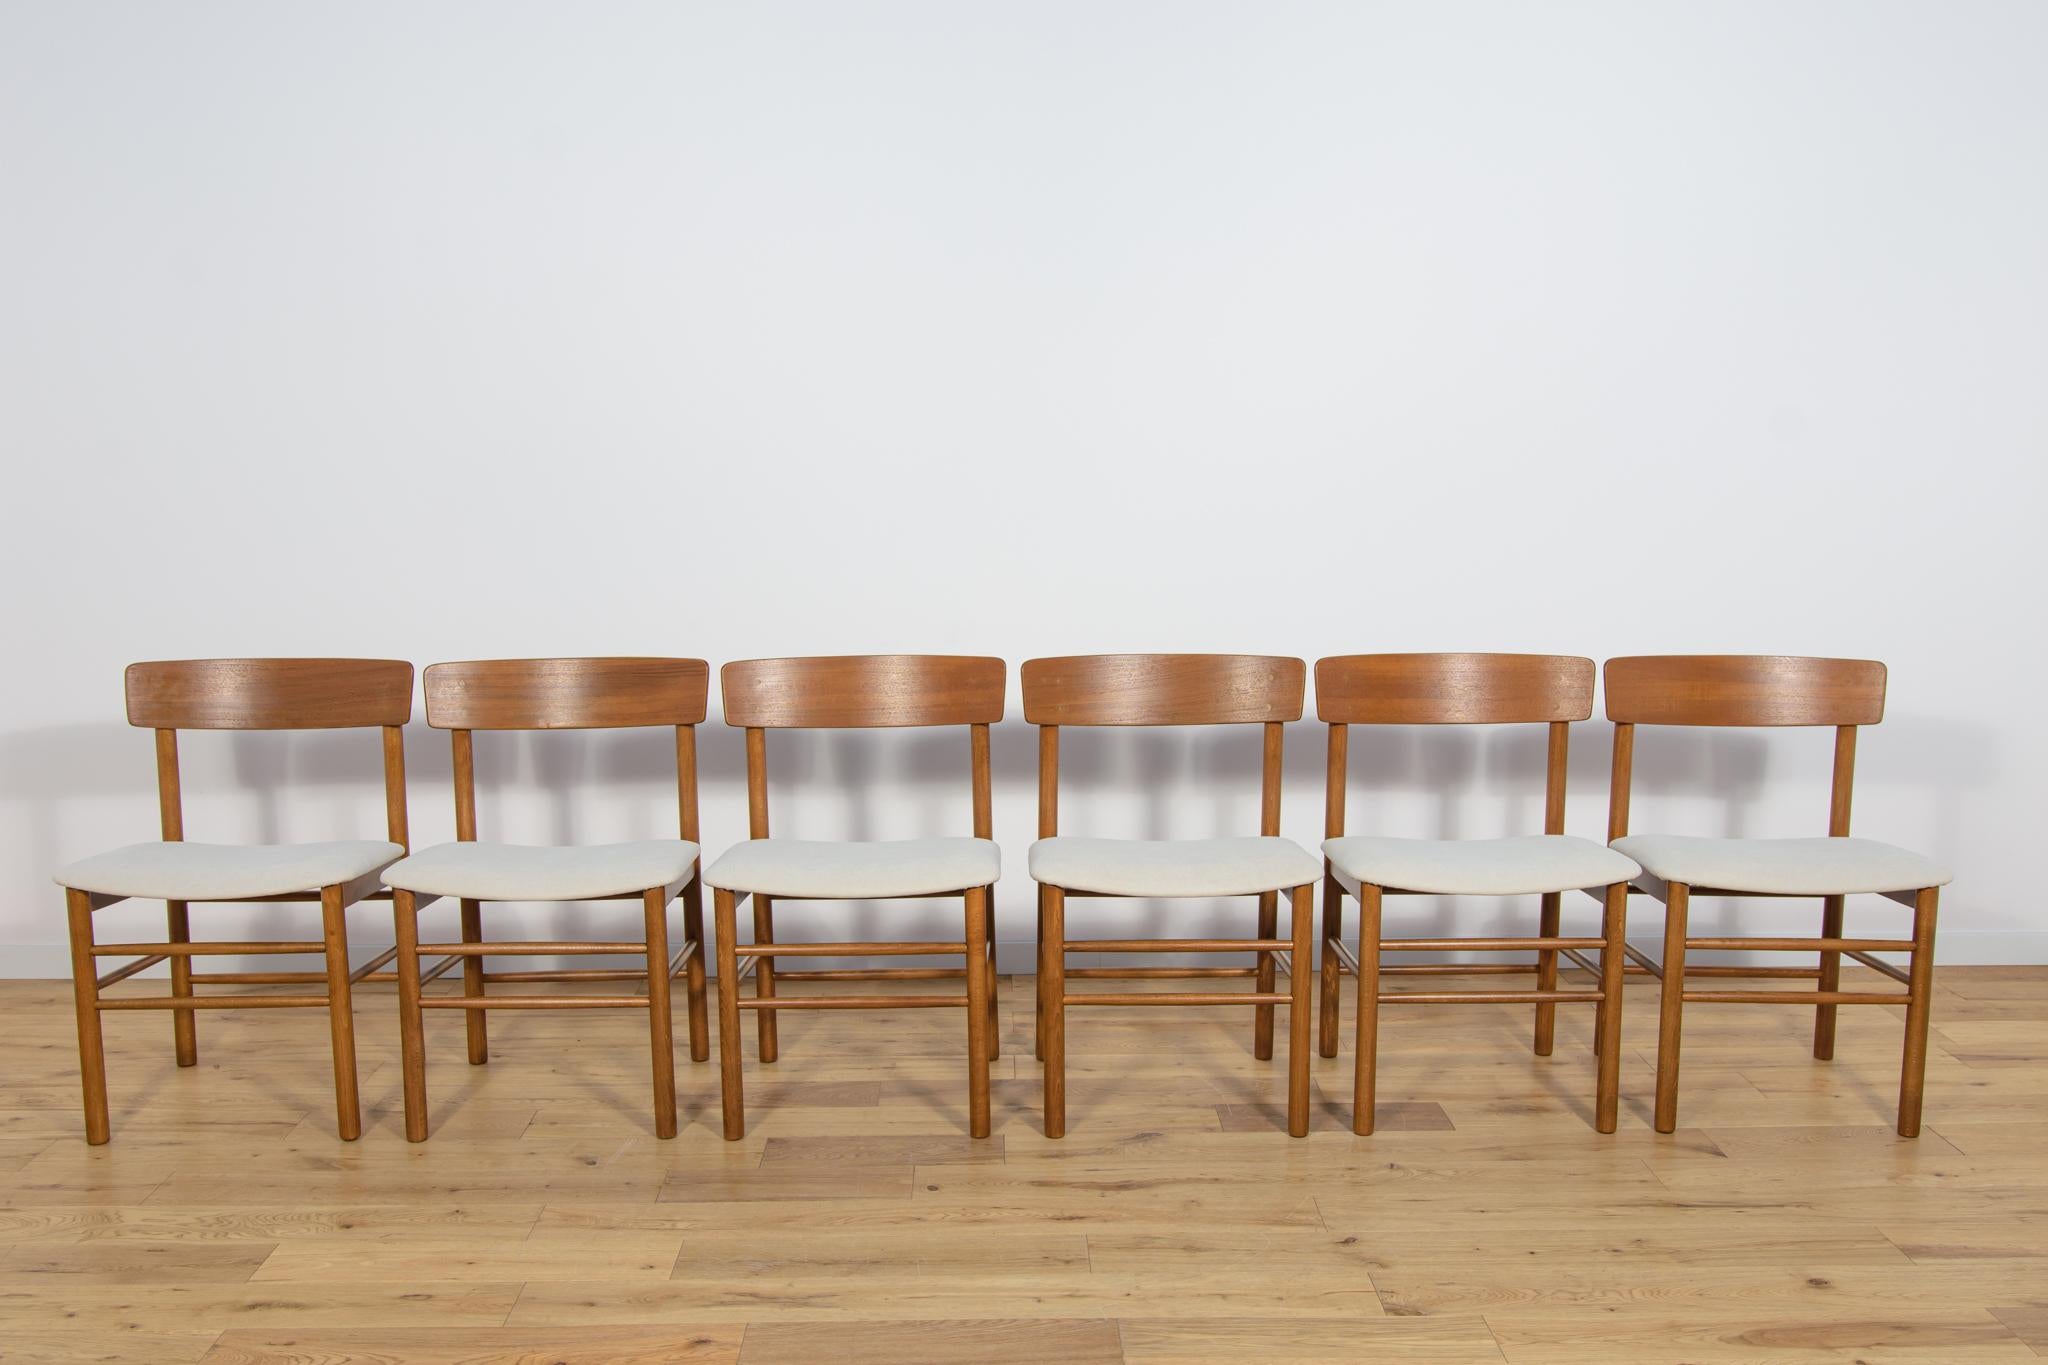 Ein Satz von sechs Esszimmerstühlen Modell J39, entworfen von einem der bedeutendsten dänischen Designer Børge Mogensen für Farstrup in den 1950er Jahren. Stühle nach umfassender Renovierung durch Schreiner und Polsterer. Das Gestell ist aus